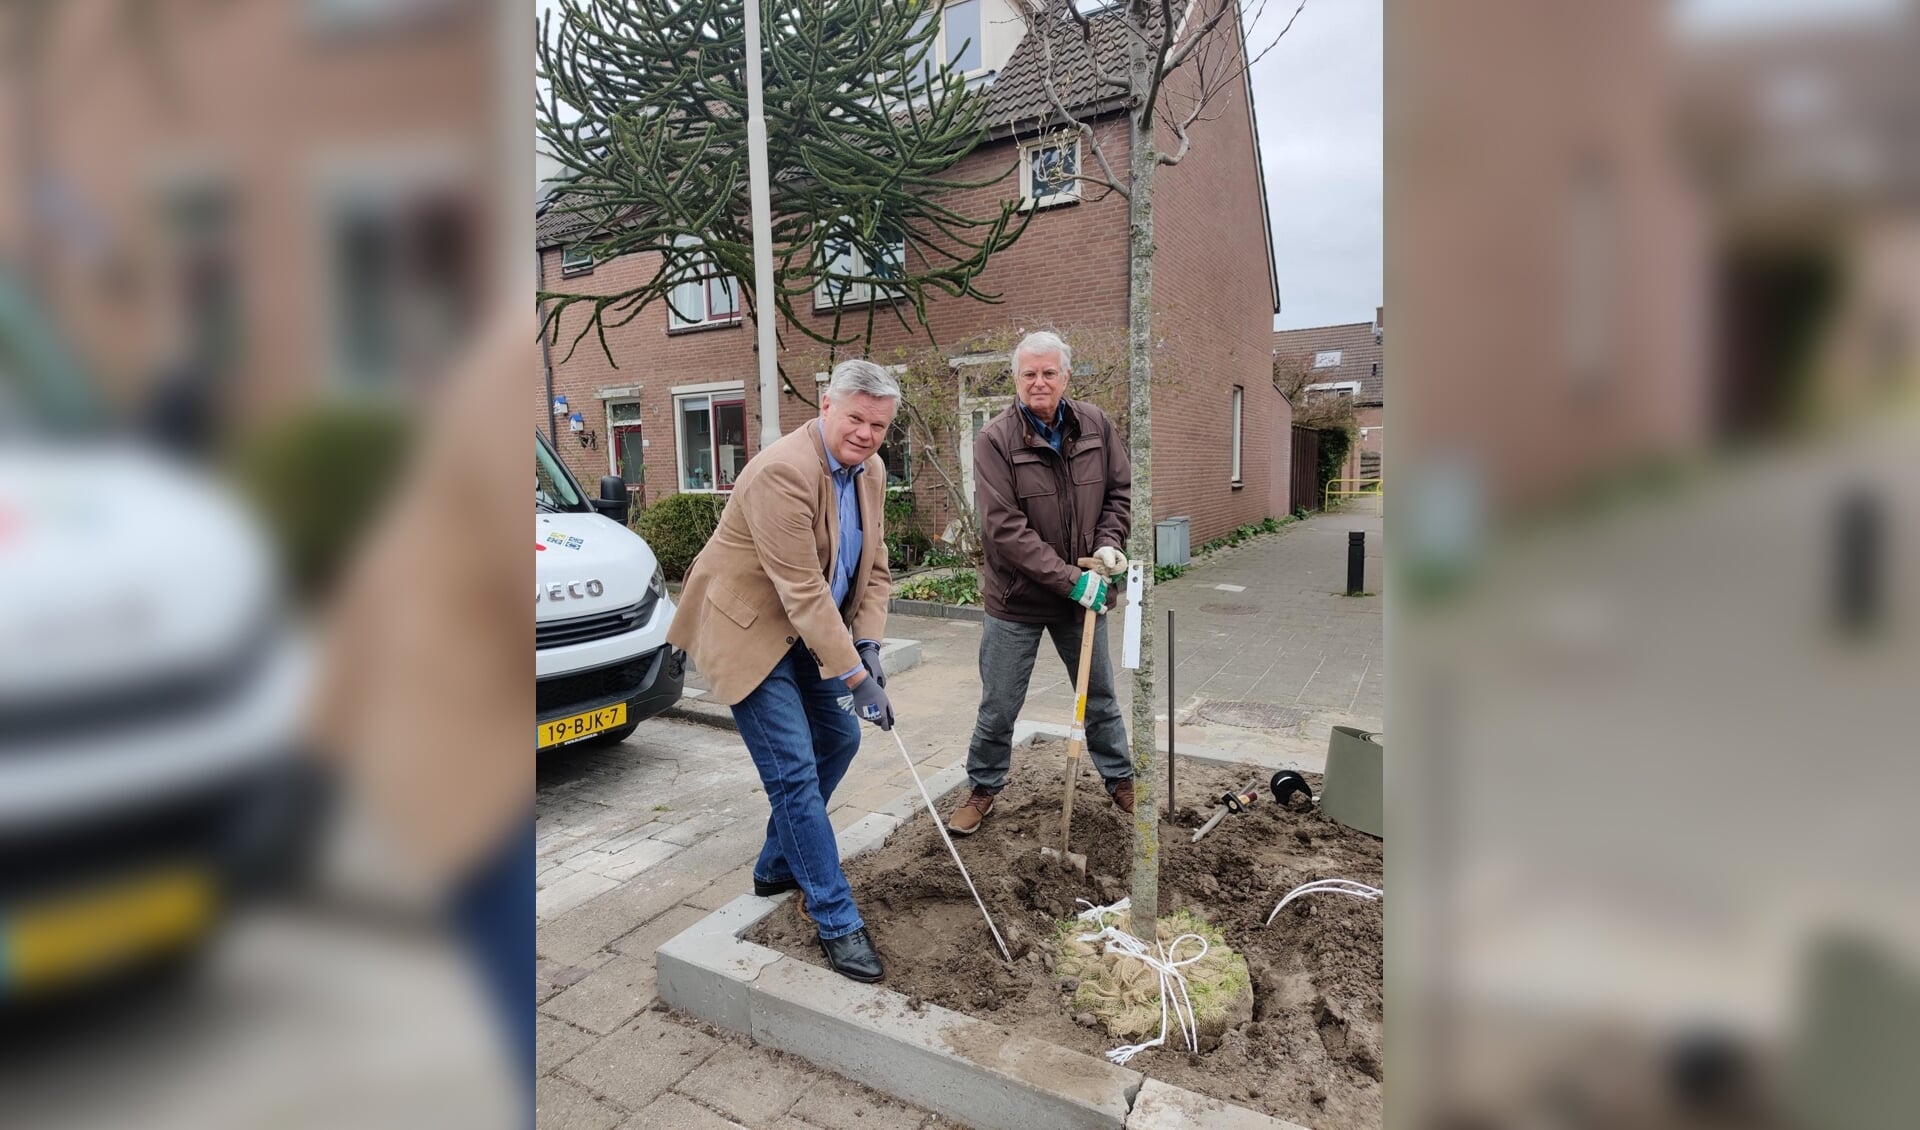 Wethouder Kees van der Zwet en bewoner de heer van Dijk planten een boom in de Voerman.